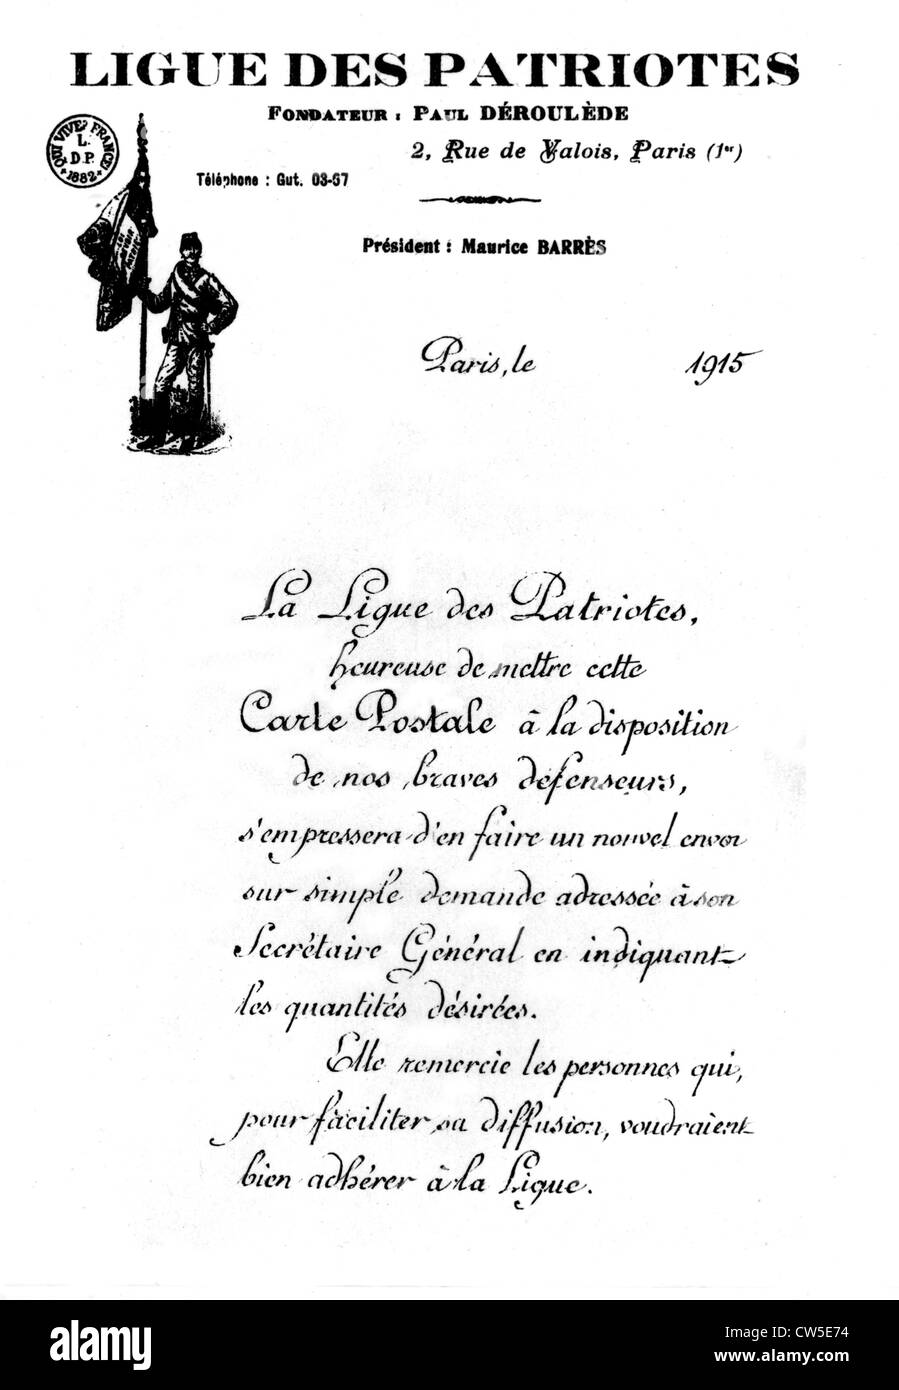 Förderung der Patrioten Liga beitreten (der Präsident von denen war Maurice Barrès) Postkarte Stockfoto